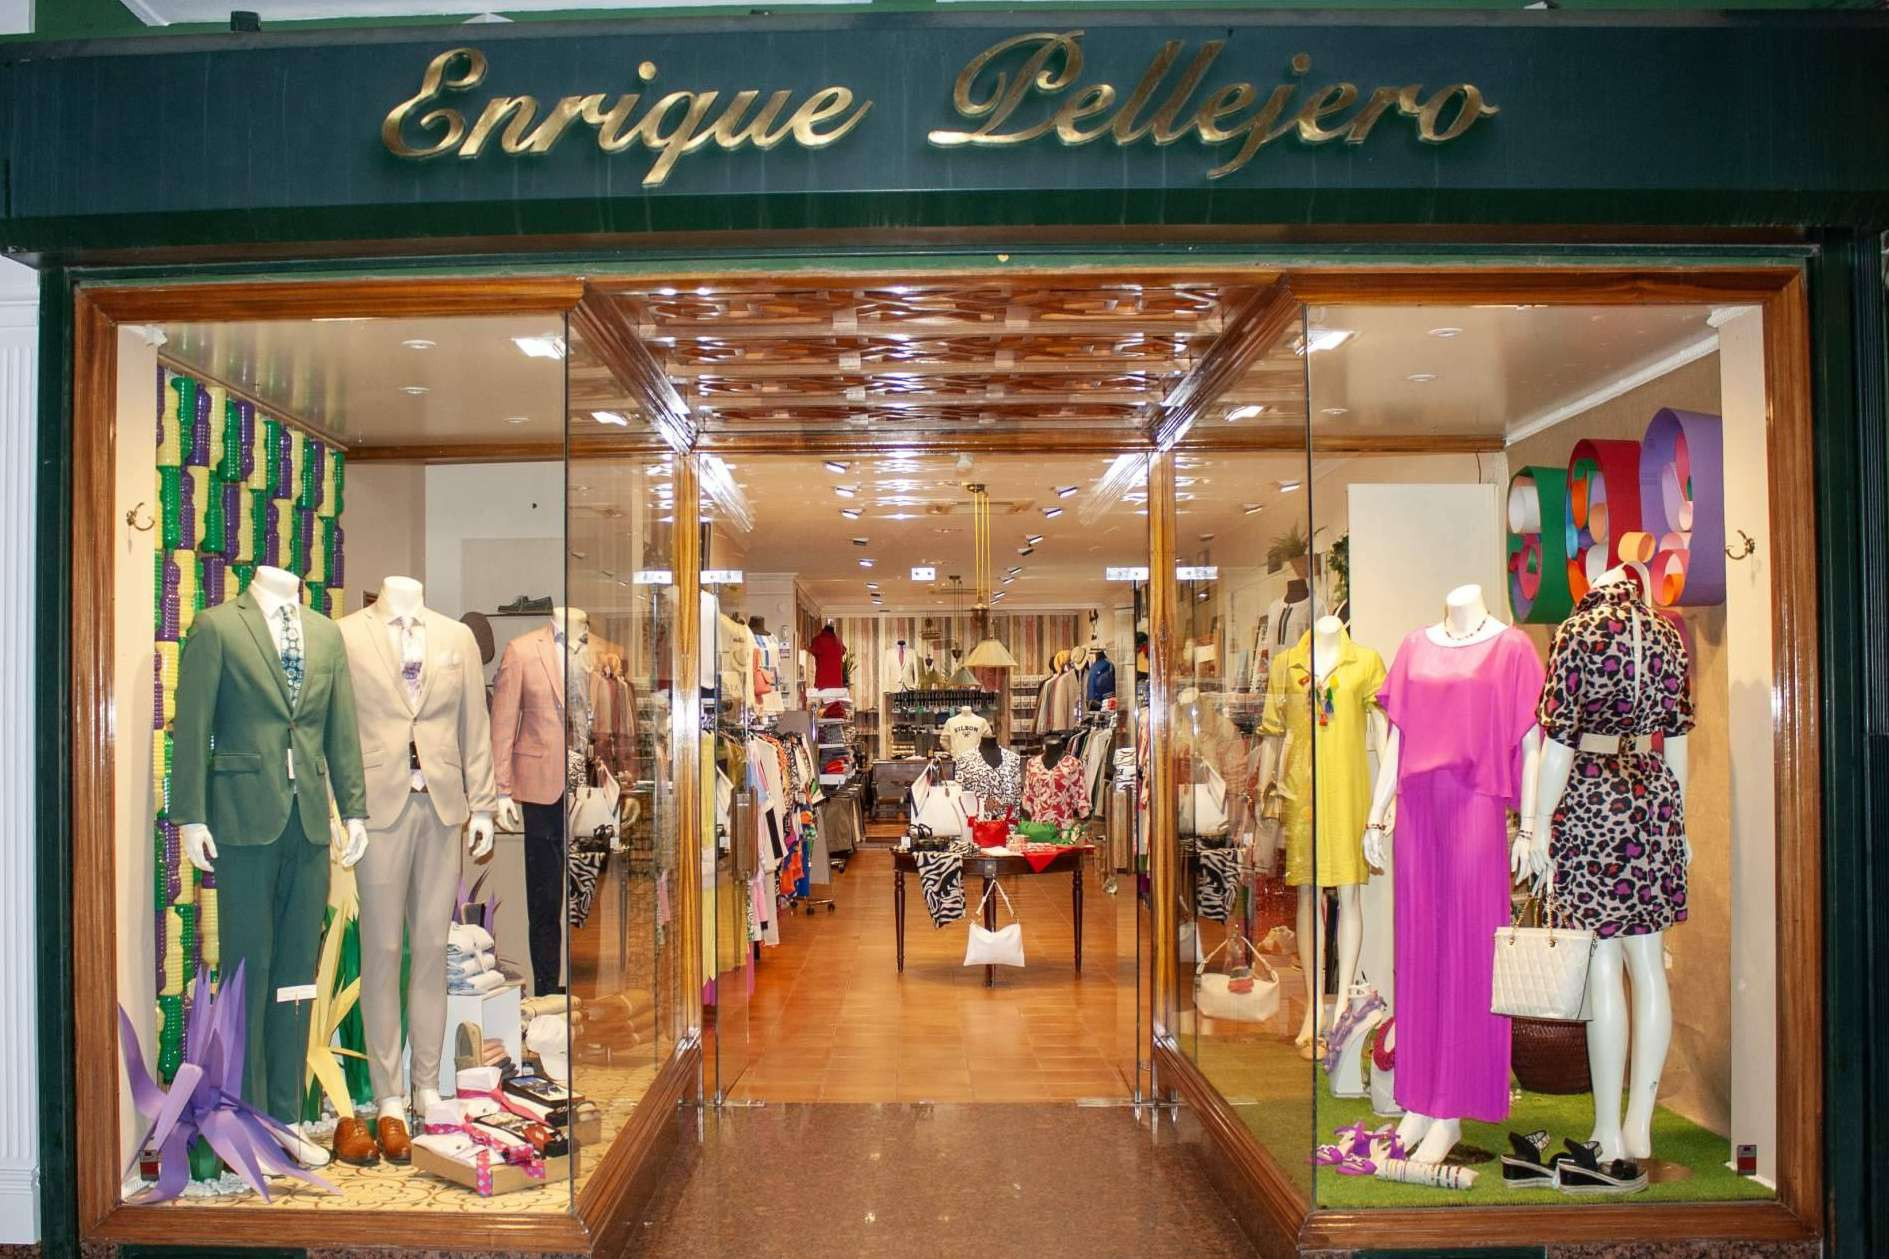  Enrique Pellejero, la tienda online multimarca con ropa para hombre y mujer 